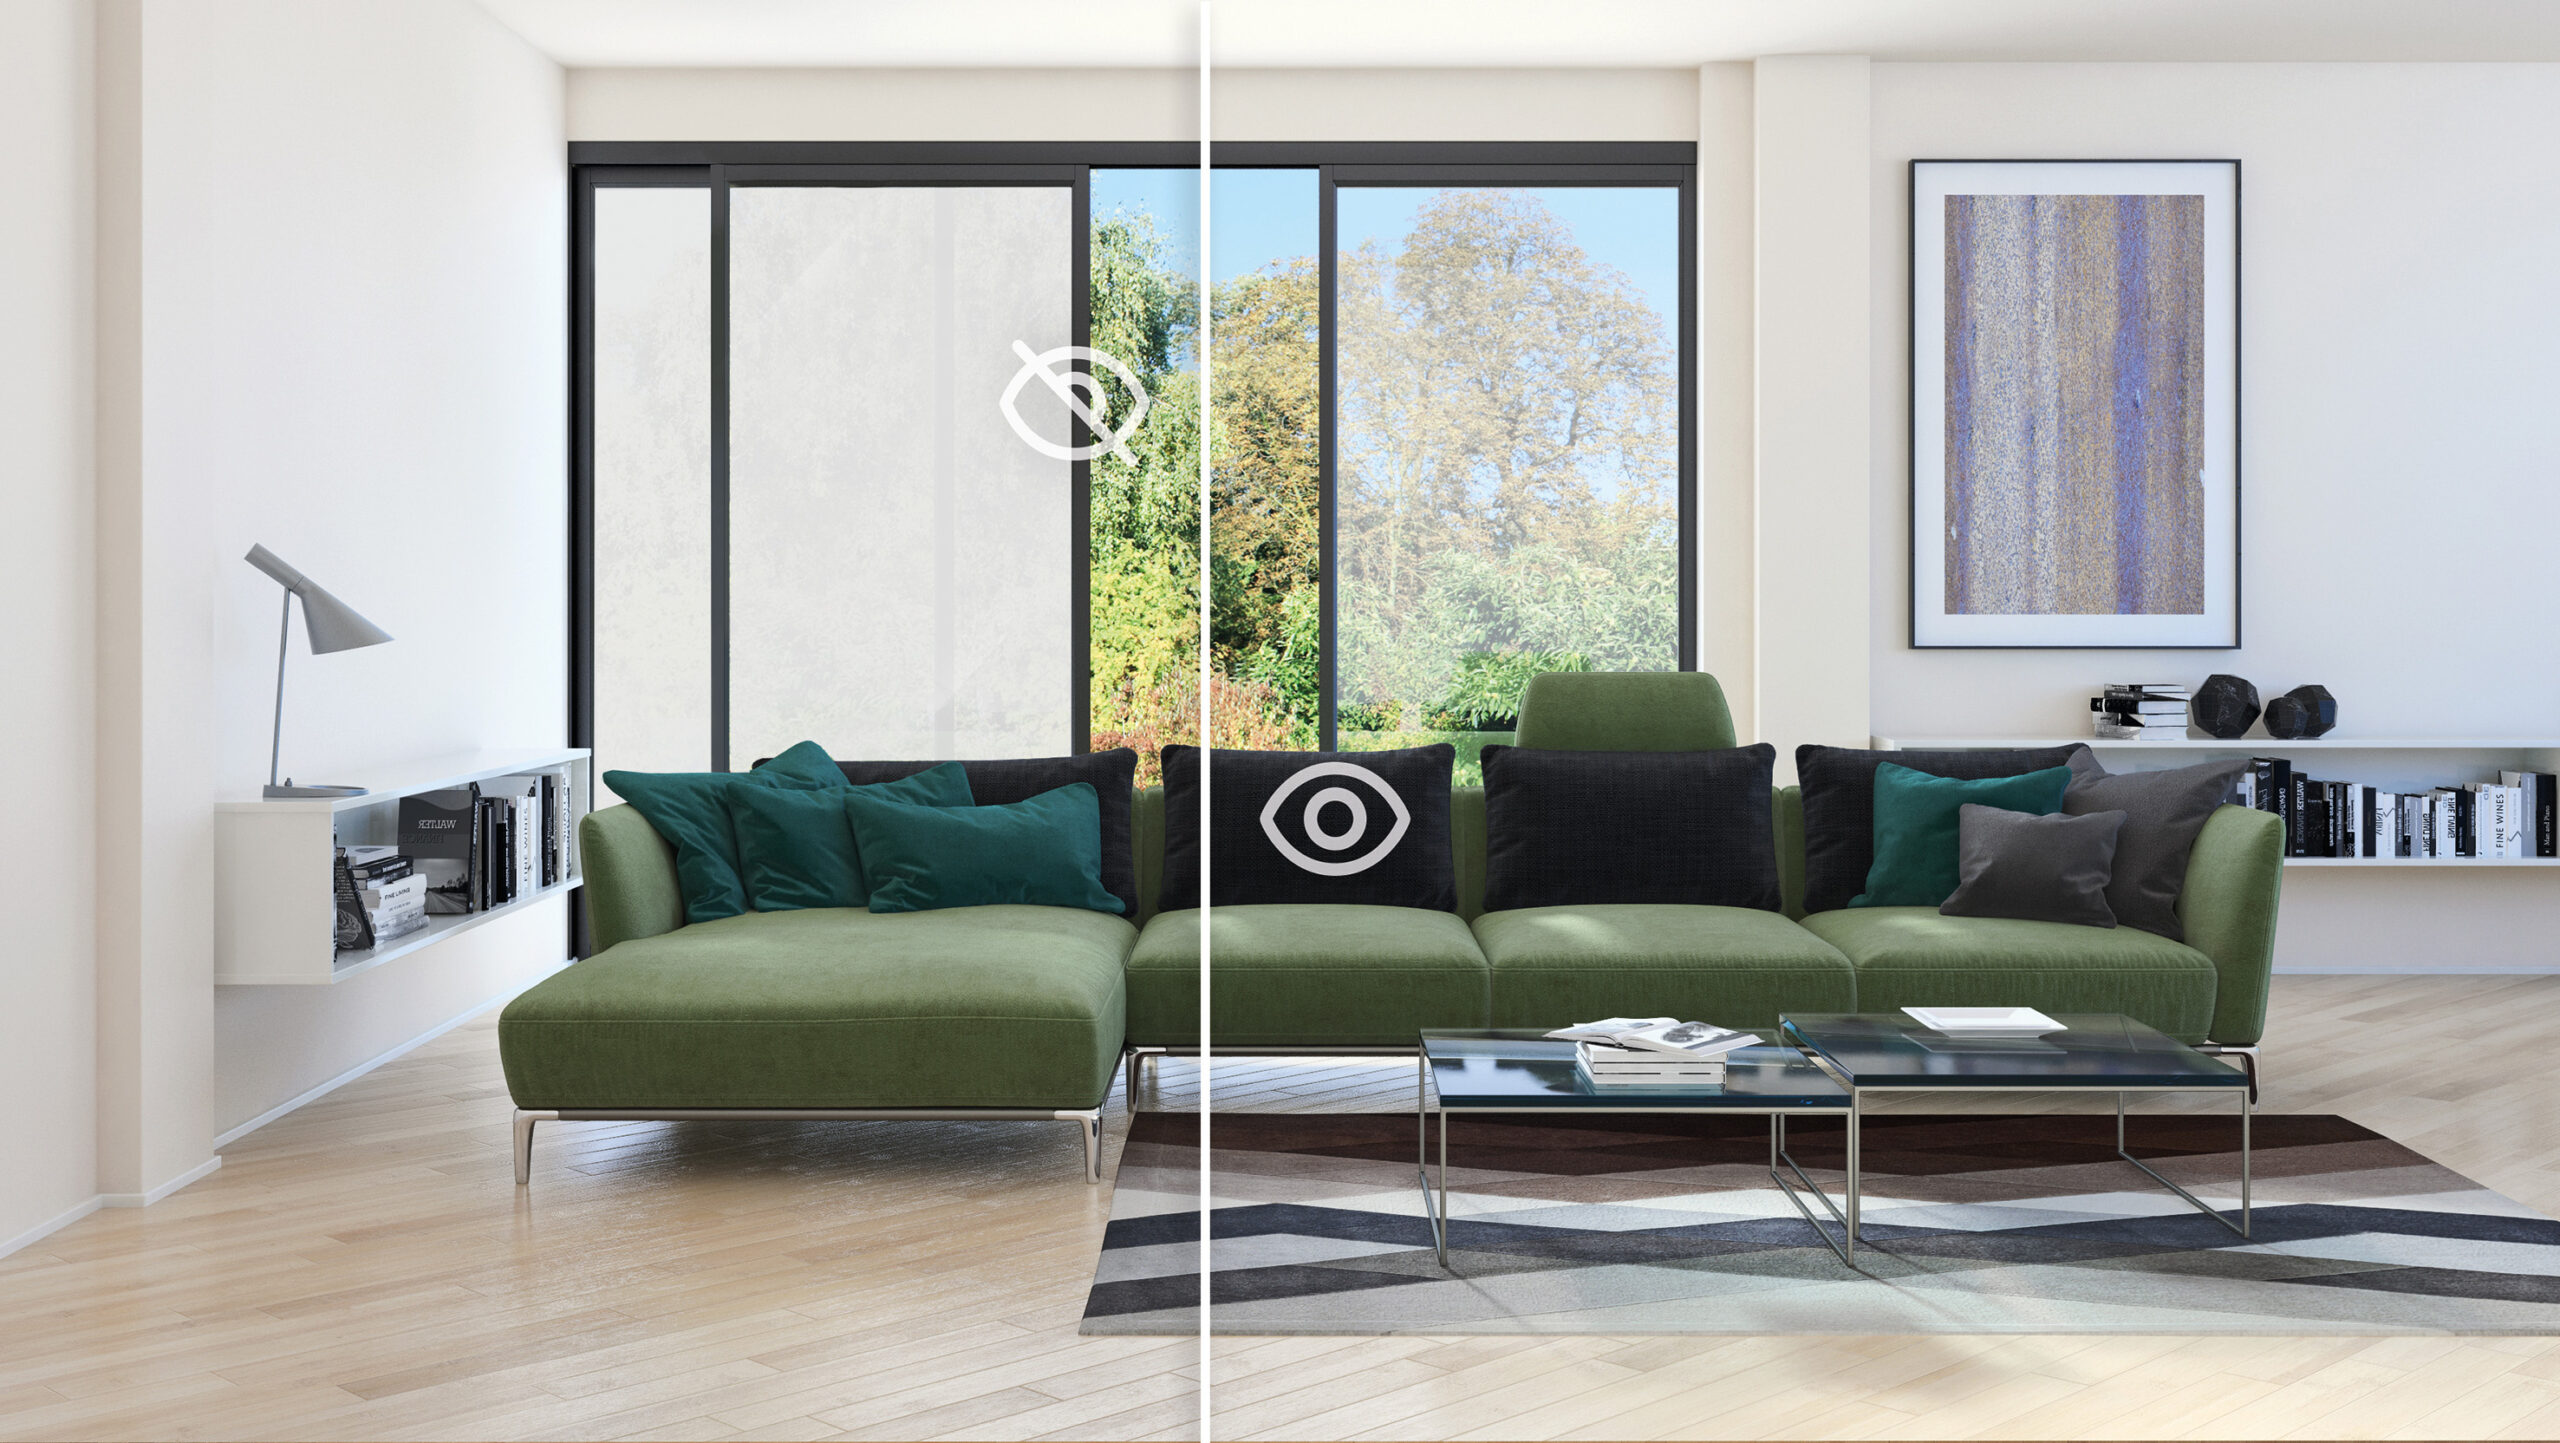 VK DESIGN - WINDOWS / GLASS WALLS Glasfassade, Fenster und Sonnenschutz mit  Sichtschutz By VITRIK